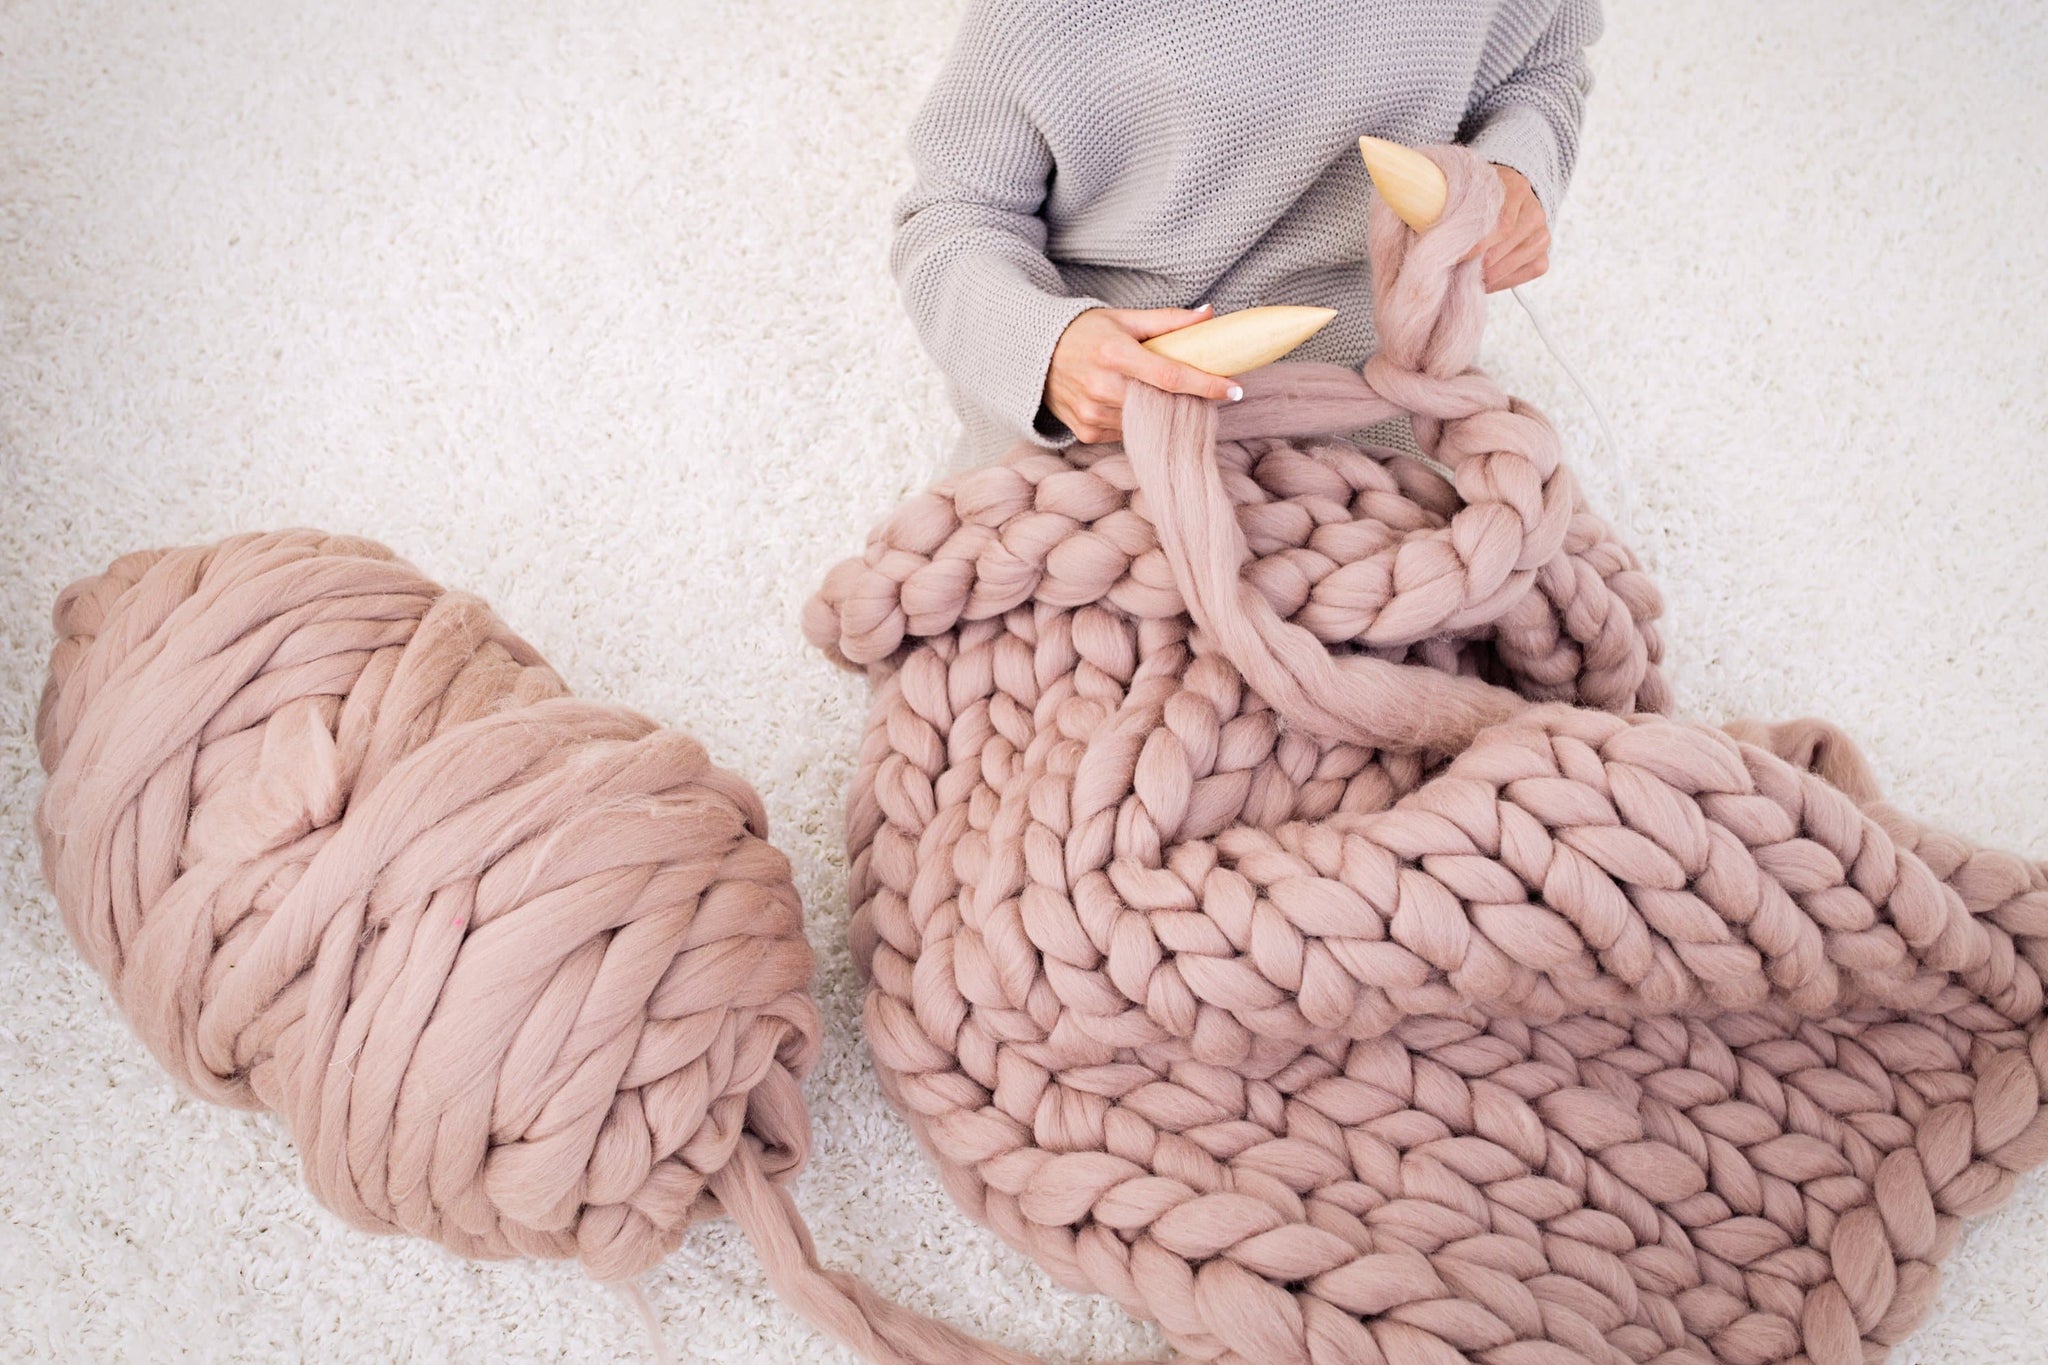 DIY Knit Kit for a blanket 40x60. Merino Wool & Giant Knitting